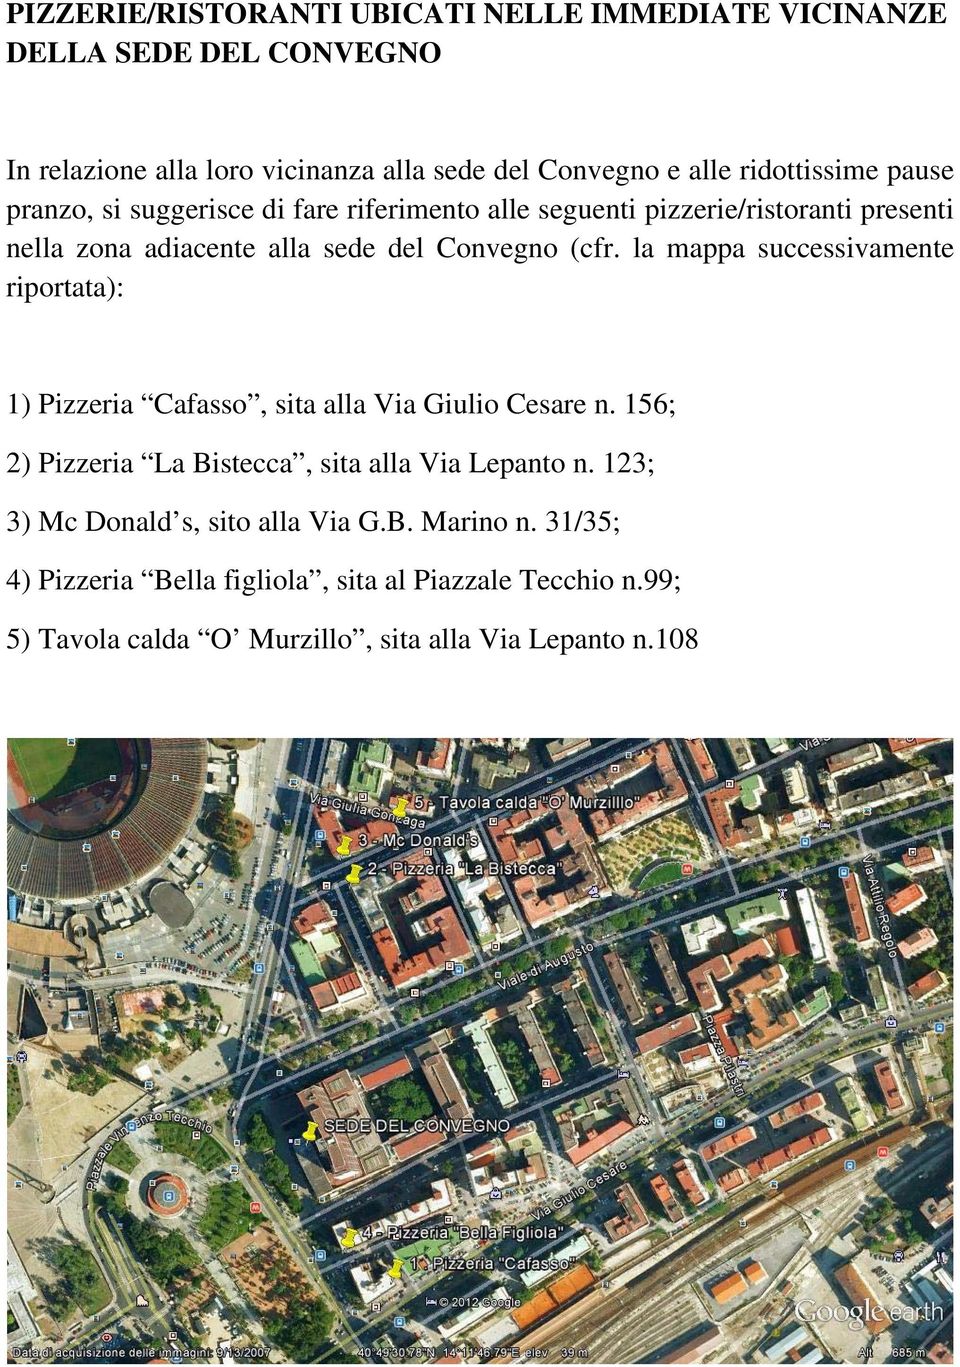 la mappa successivamente riportata): 1) Pizzeria Cafasso, sita alla Via Giulio Cesare n. 156; 2) Pizzeria La Bistecca, sita alla Via Lepanto n.